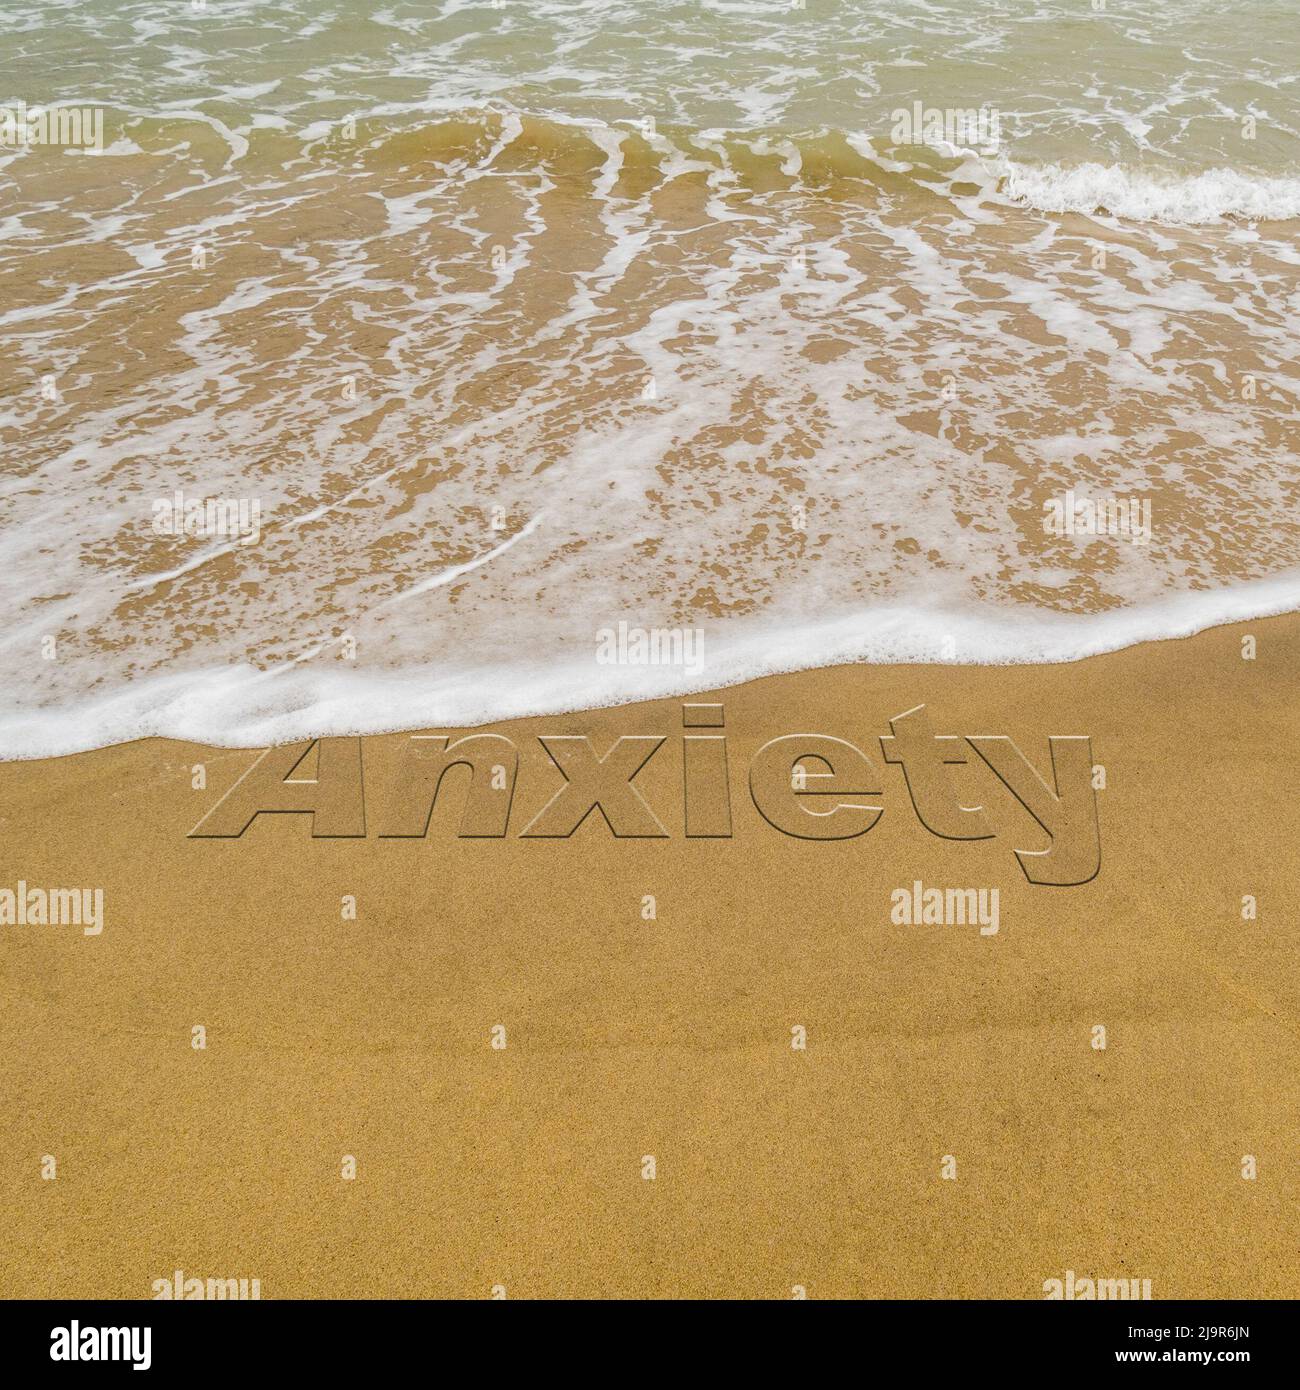 Konzeptbild - um Stress abzuwaschen, indem man einen Urlaub macht, während die Wellen an einem Sandstrand das Wort „Angst“ im Sand wegwaschen. Stockfoto